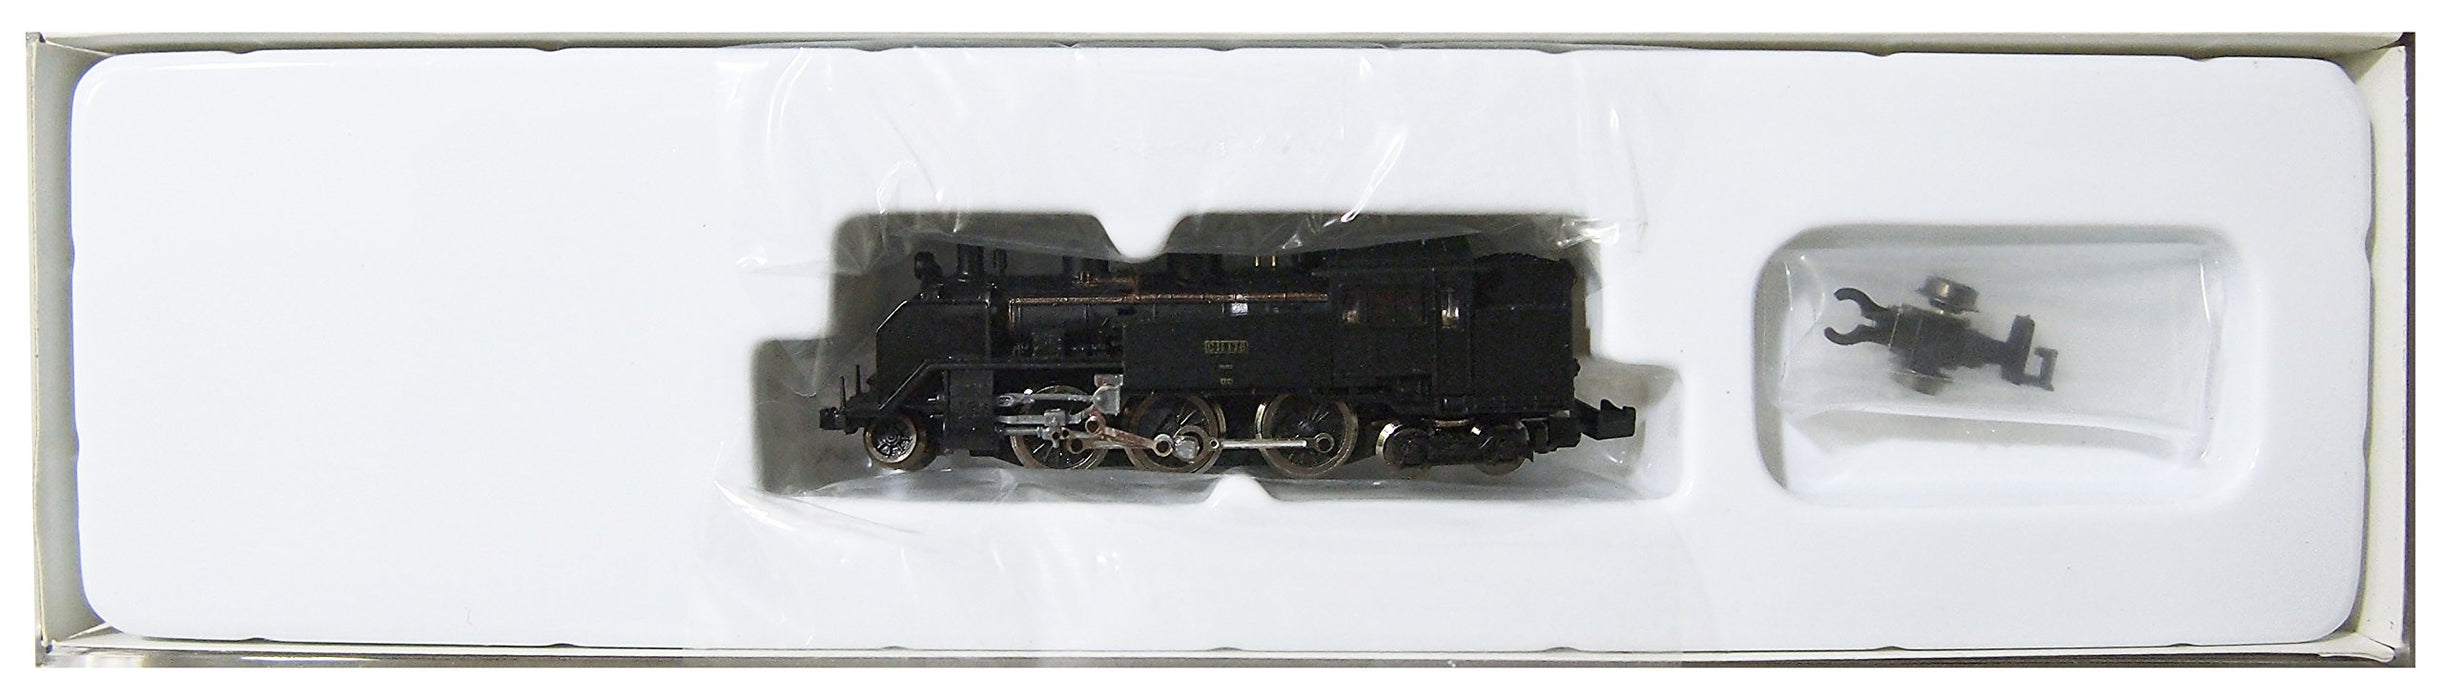 Rokuhan Z Gauge T019-1 C11 3Rd Type Standard Train Model